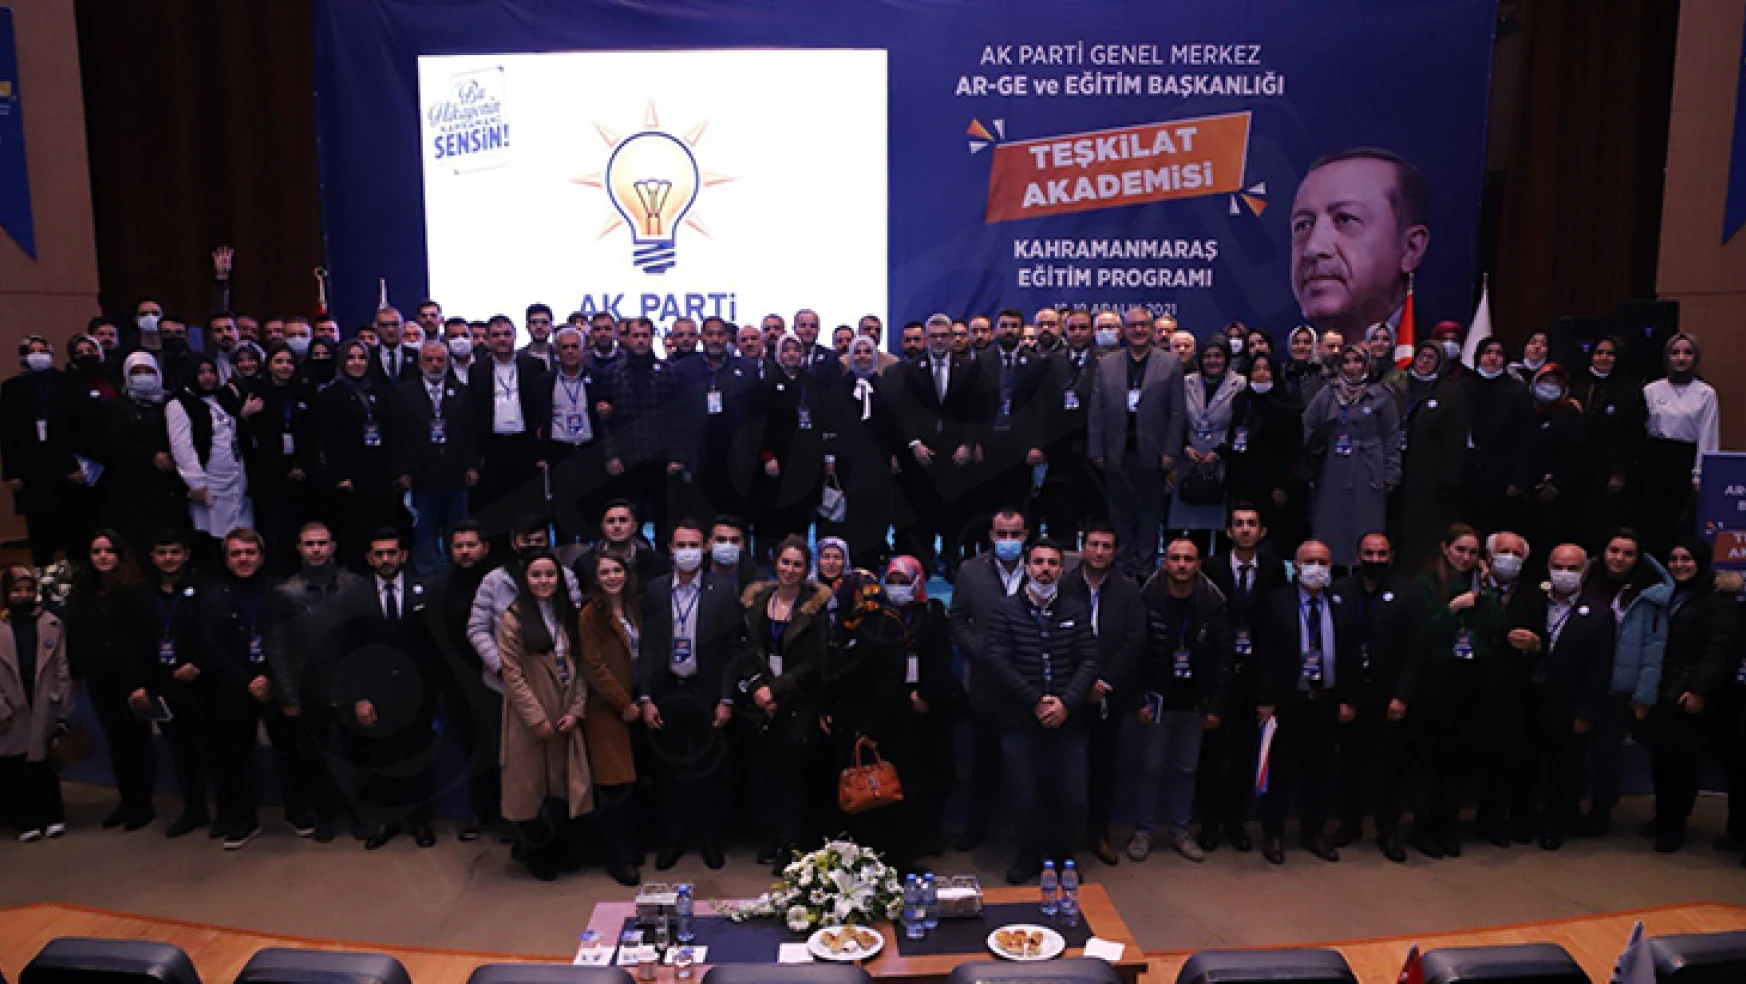 AK Parti Teşkilat Akademisi eğitimleri Kahramanmaraş'ta yapıldı